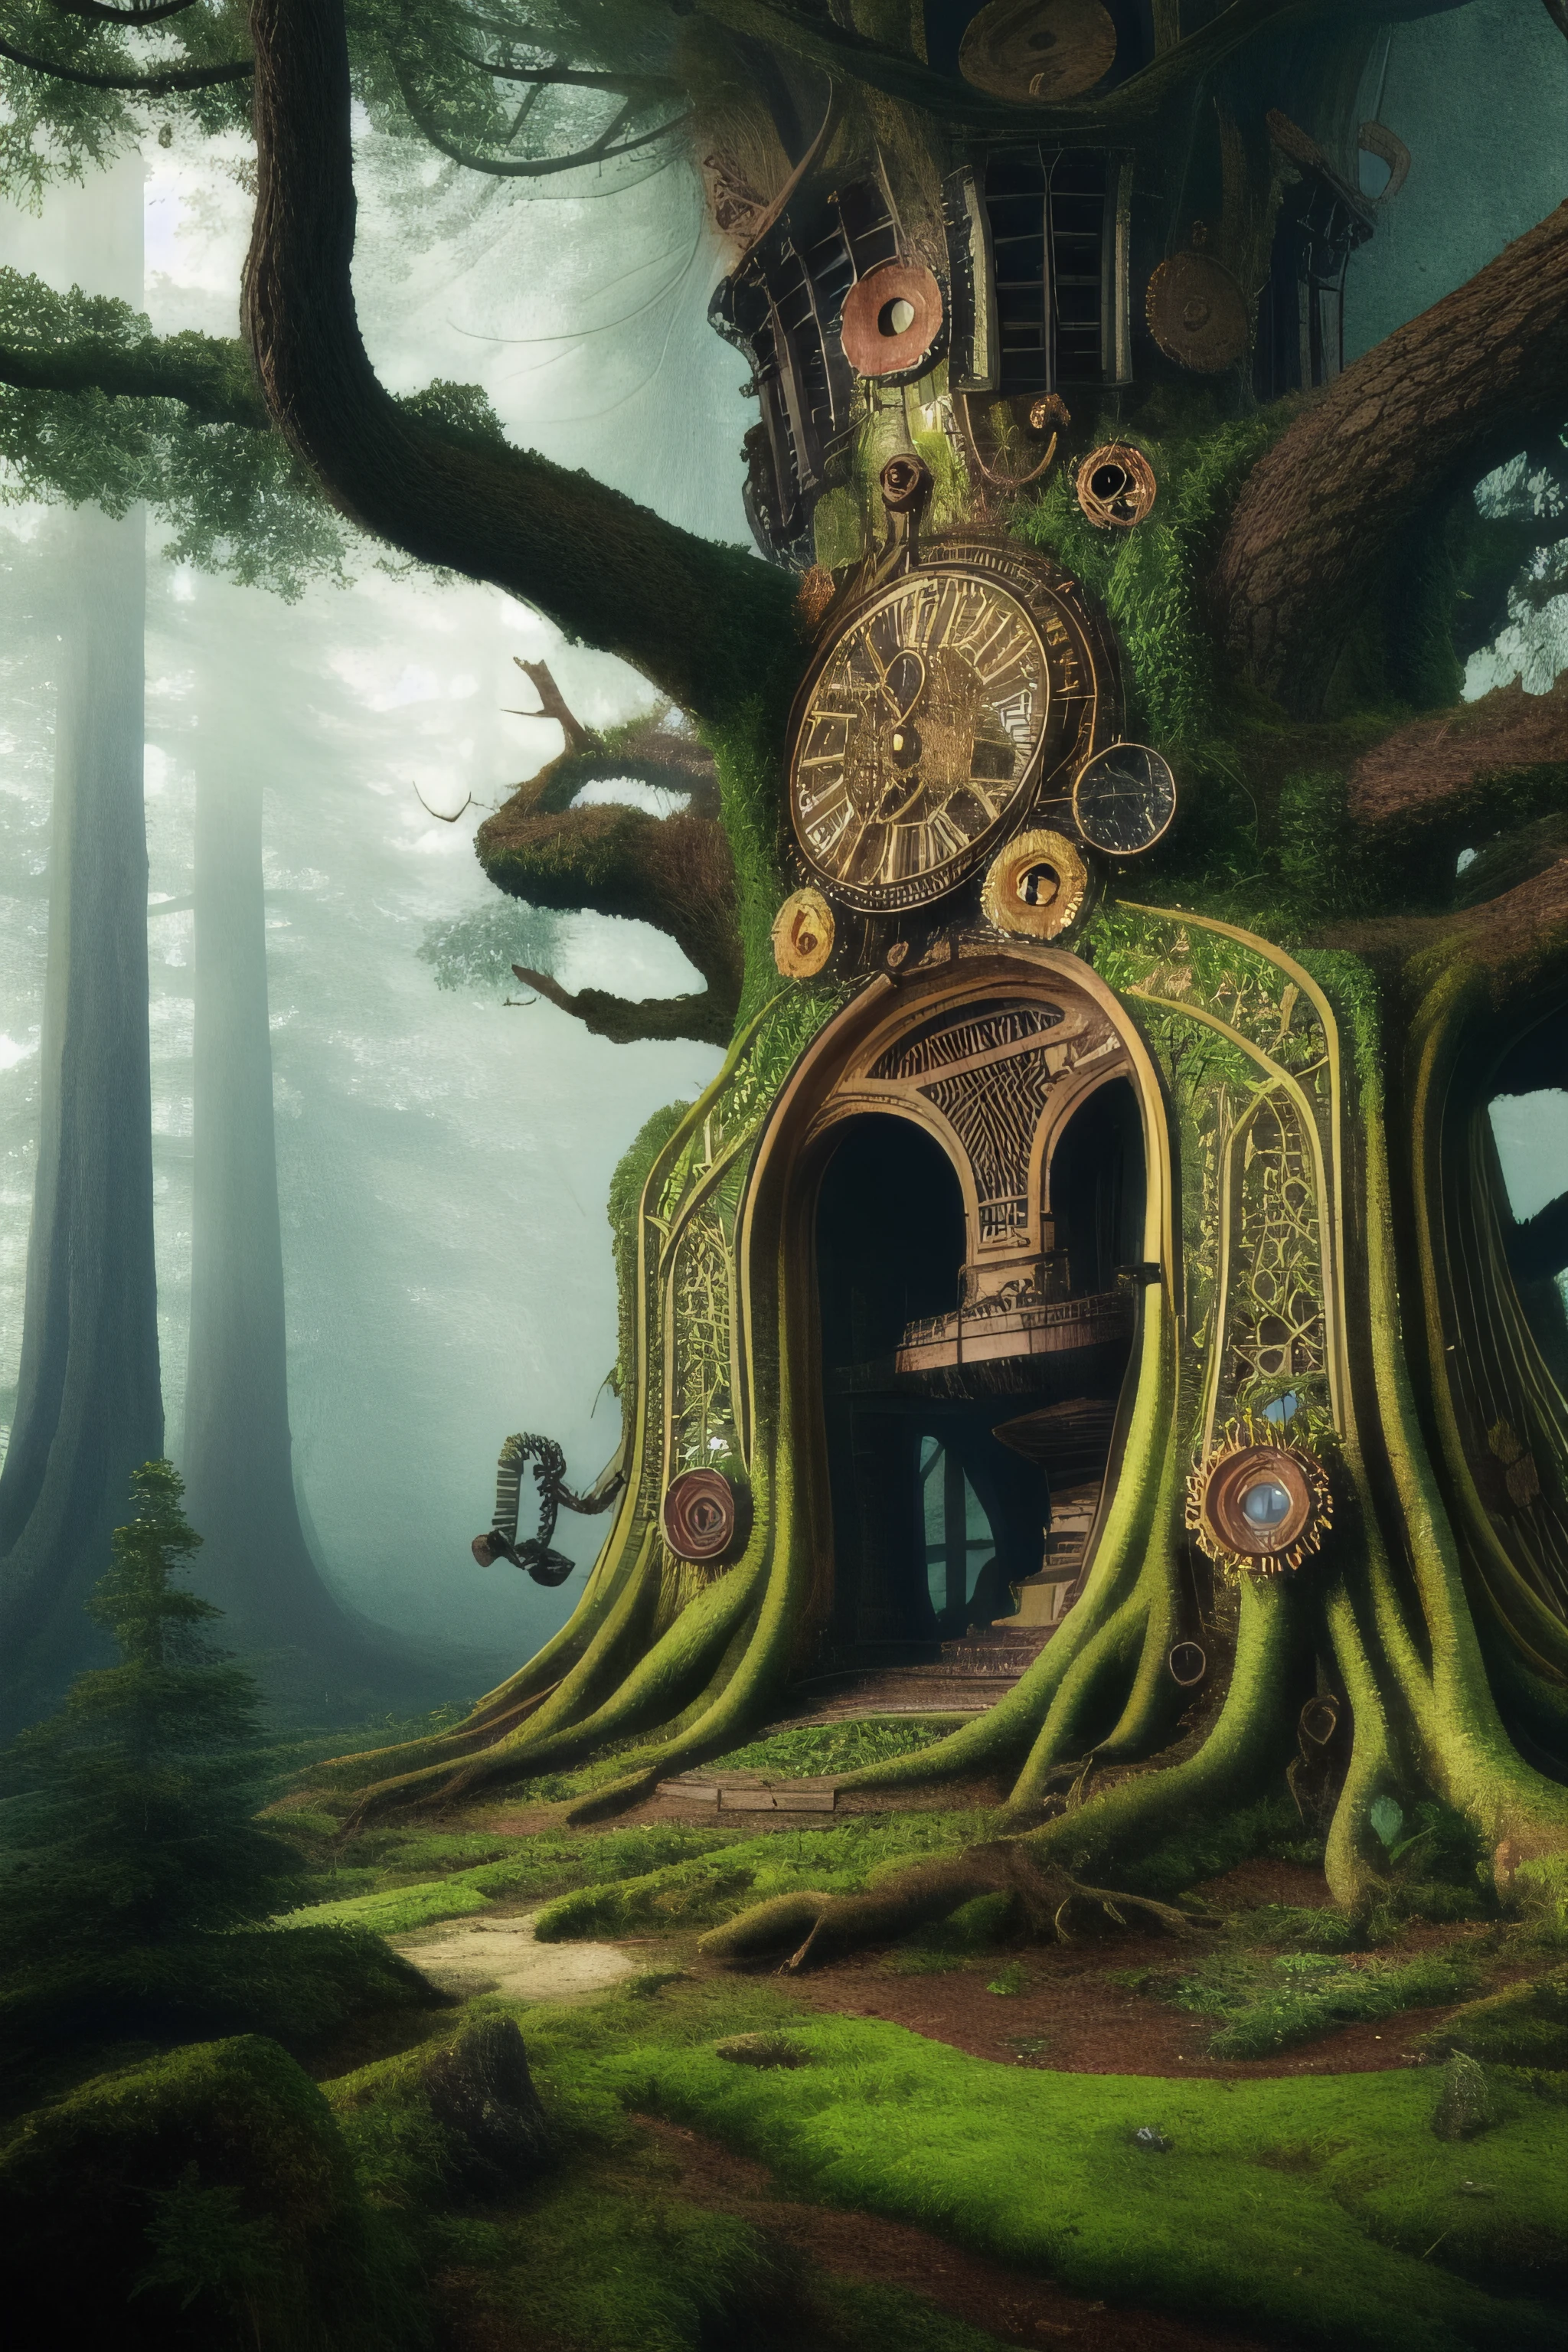 Yggdrasil imaginado como un steampunk que se eleva sobre un bosque, rodeado de bosque, Intrincado, detallado, colores vívidos, Híper realista, Tiro medio, estilo artístico de Julie Bell, Obra maestra